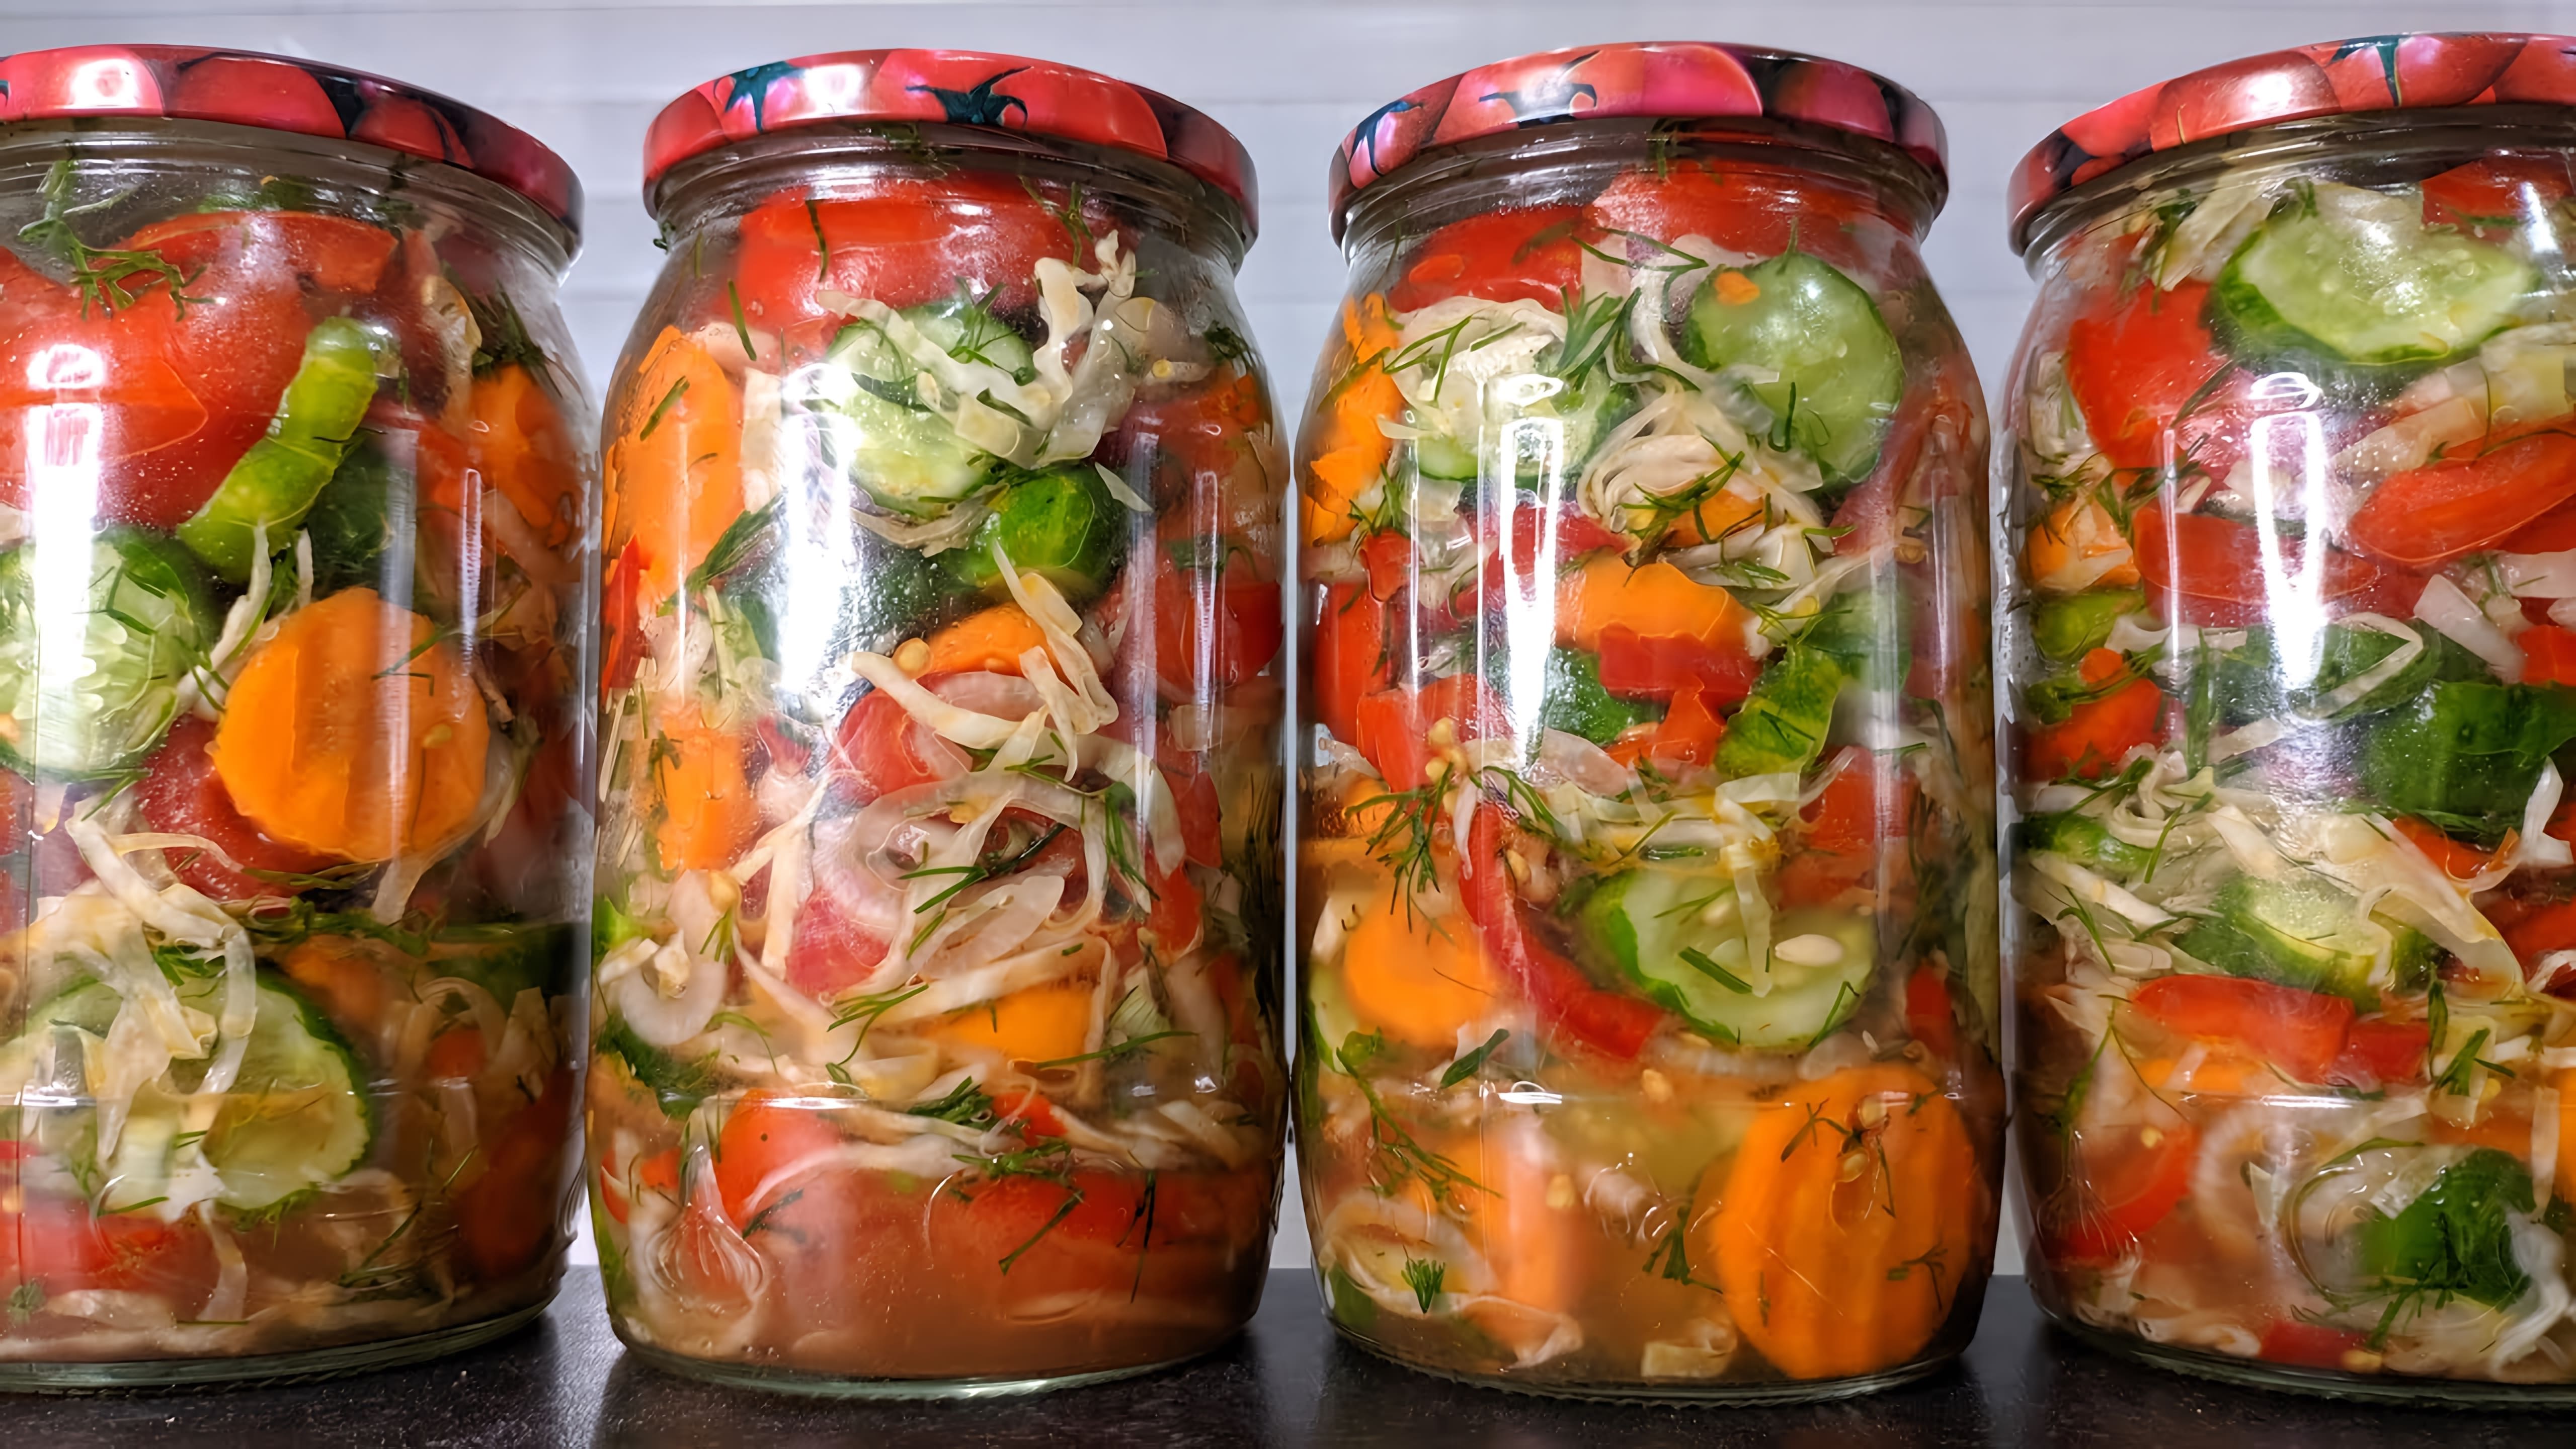 салатназиму #кубанский #рецепт Вкуснейший овощной салат на зиму, проверенный временем. Закрываю каждый год. 